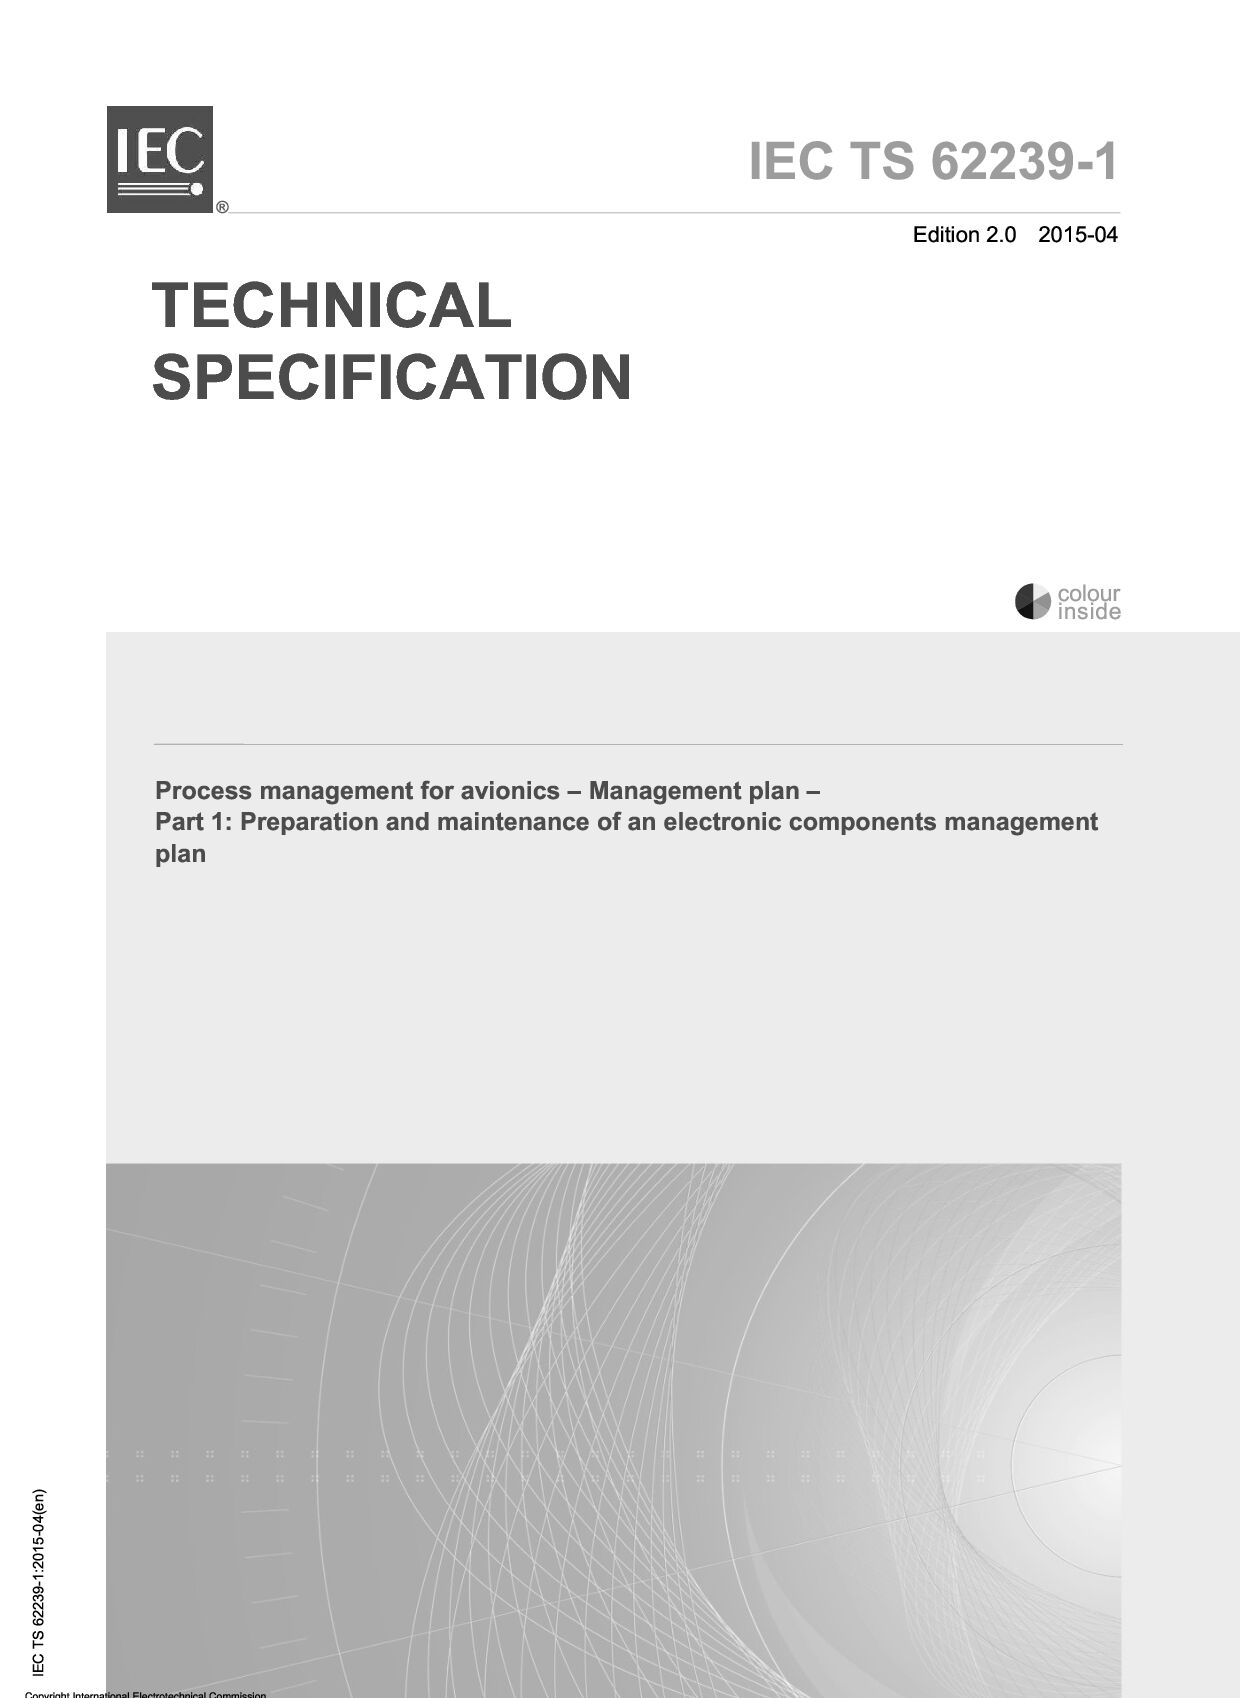 IEC TS 62239-1:2015